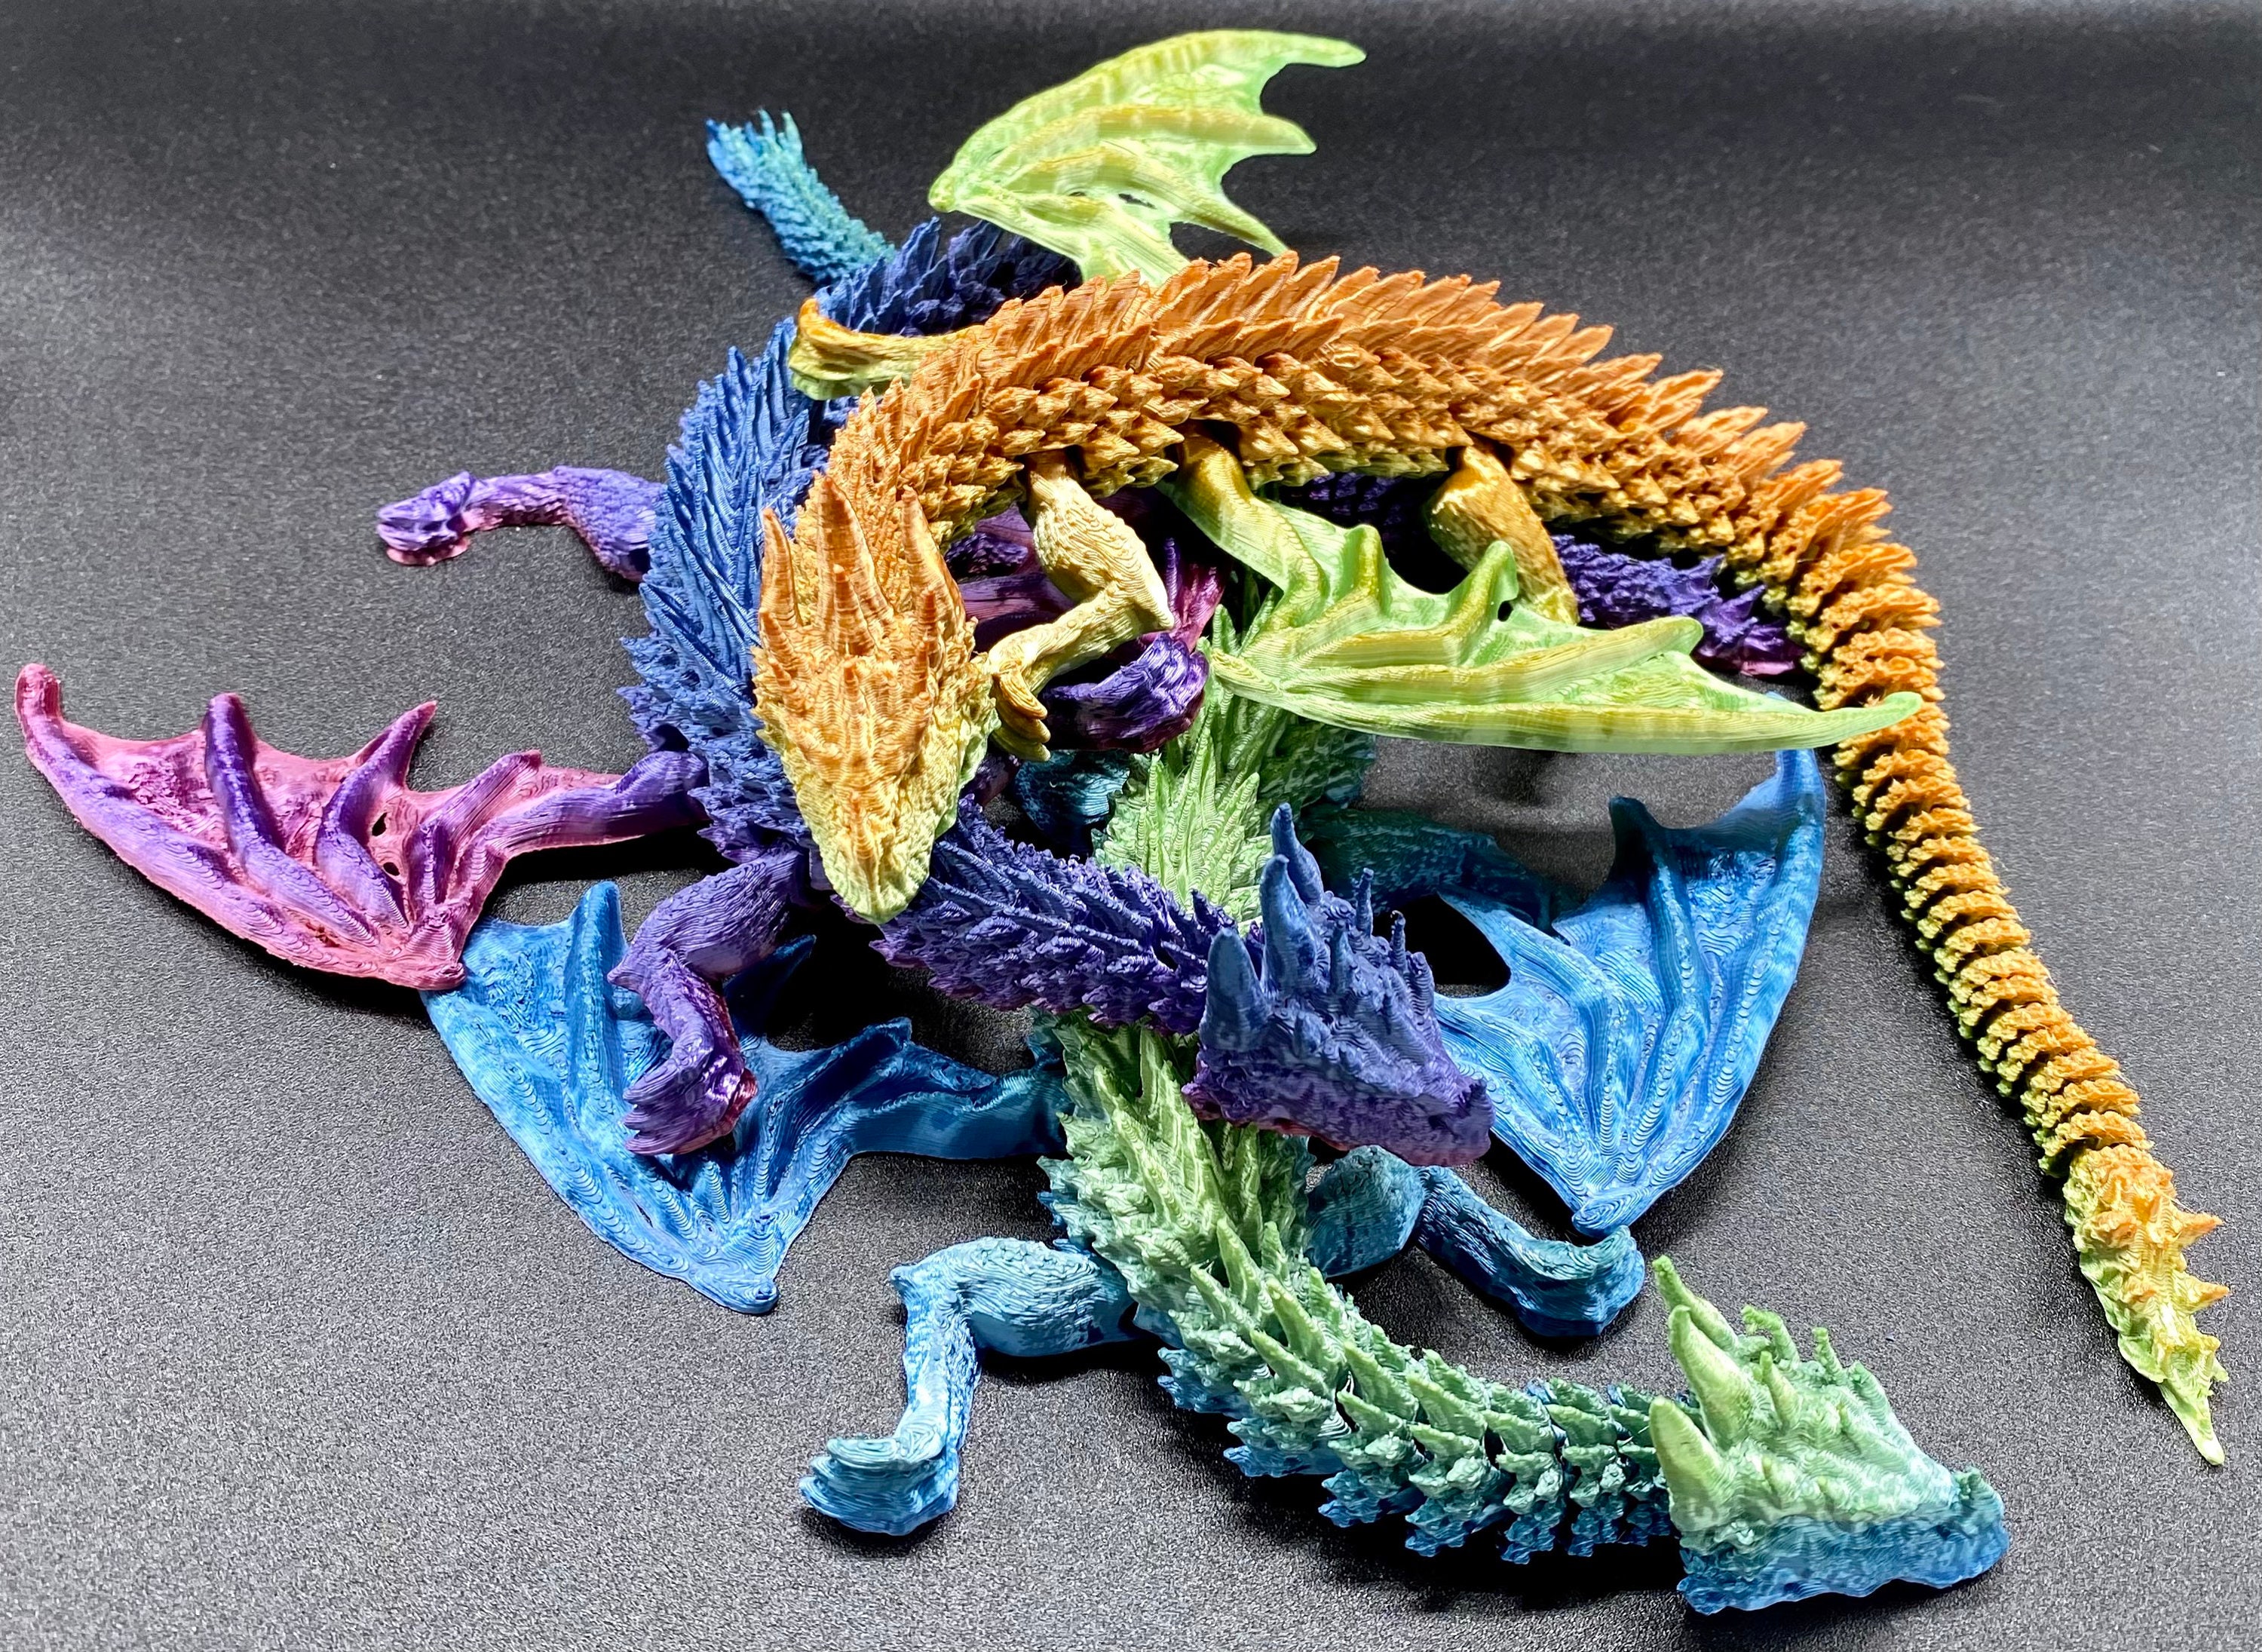 Larry Belmont leef ermee verslag doen van 15 3D-geprinte gelede gevleugelde draak speelgoed van - Etsy Nederland